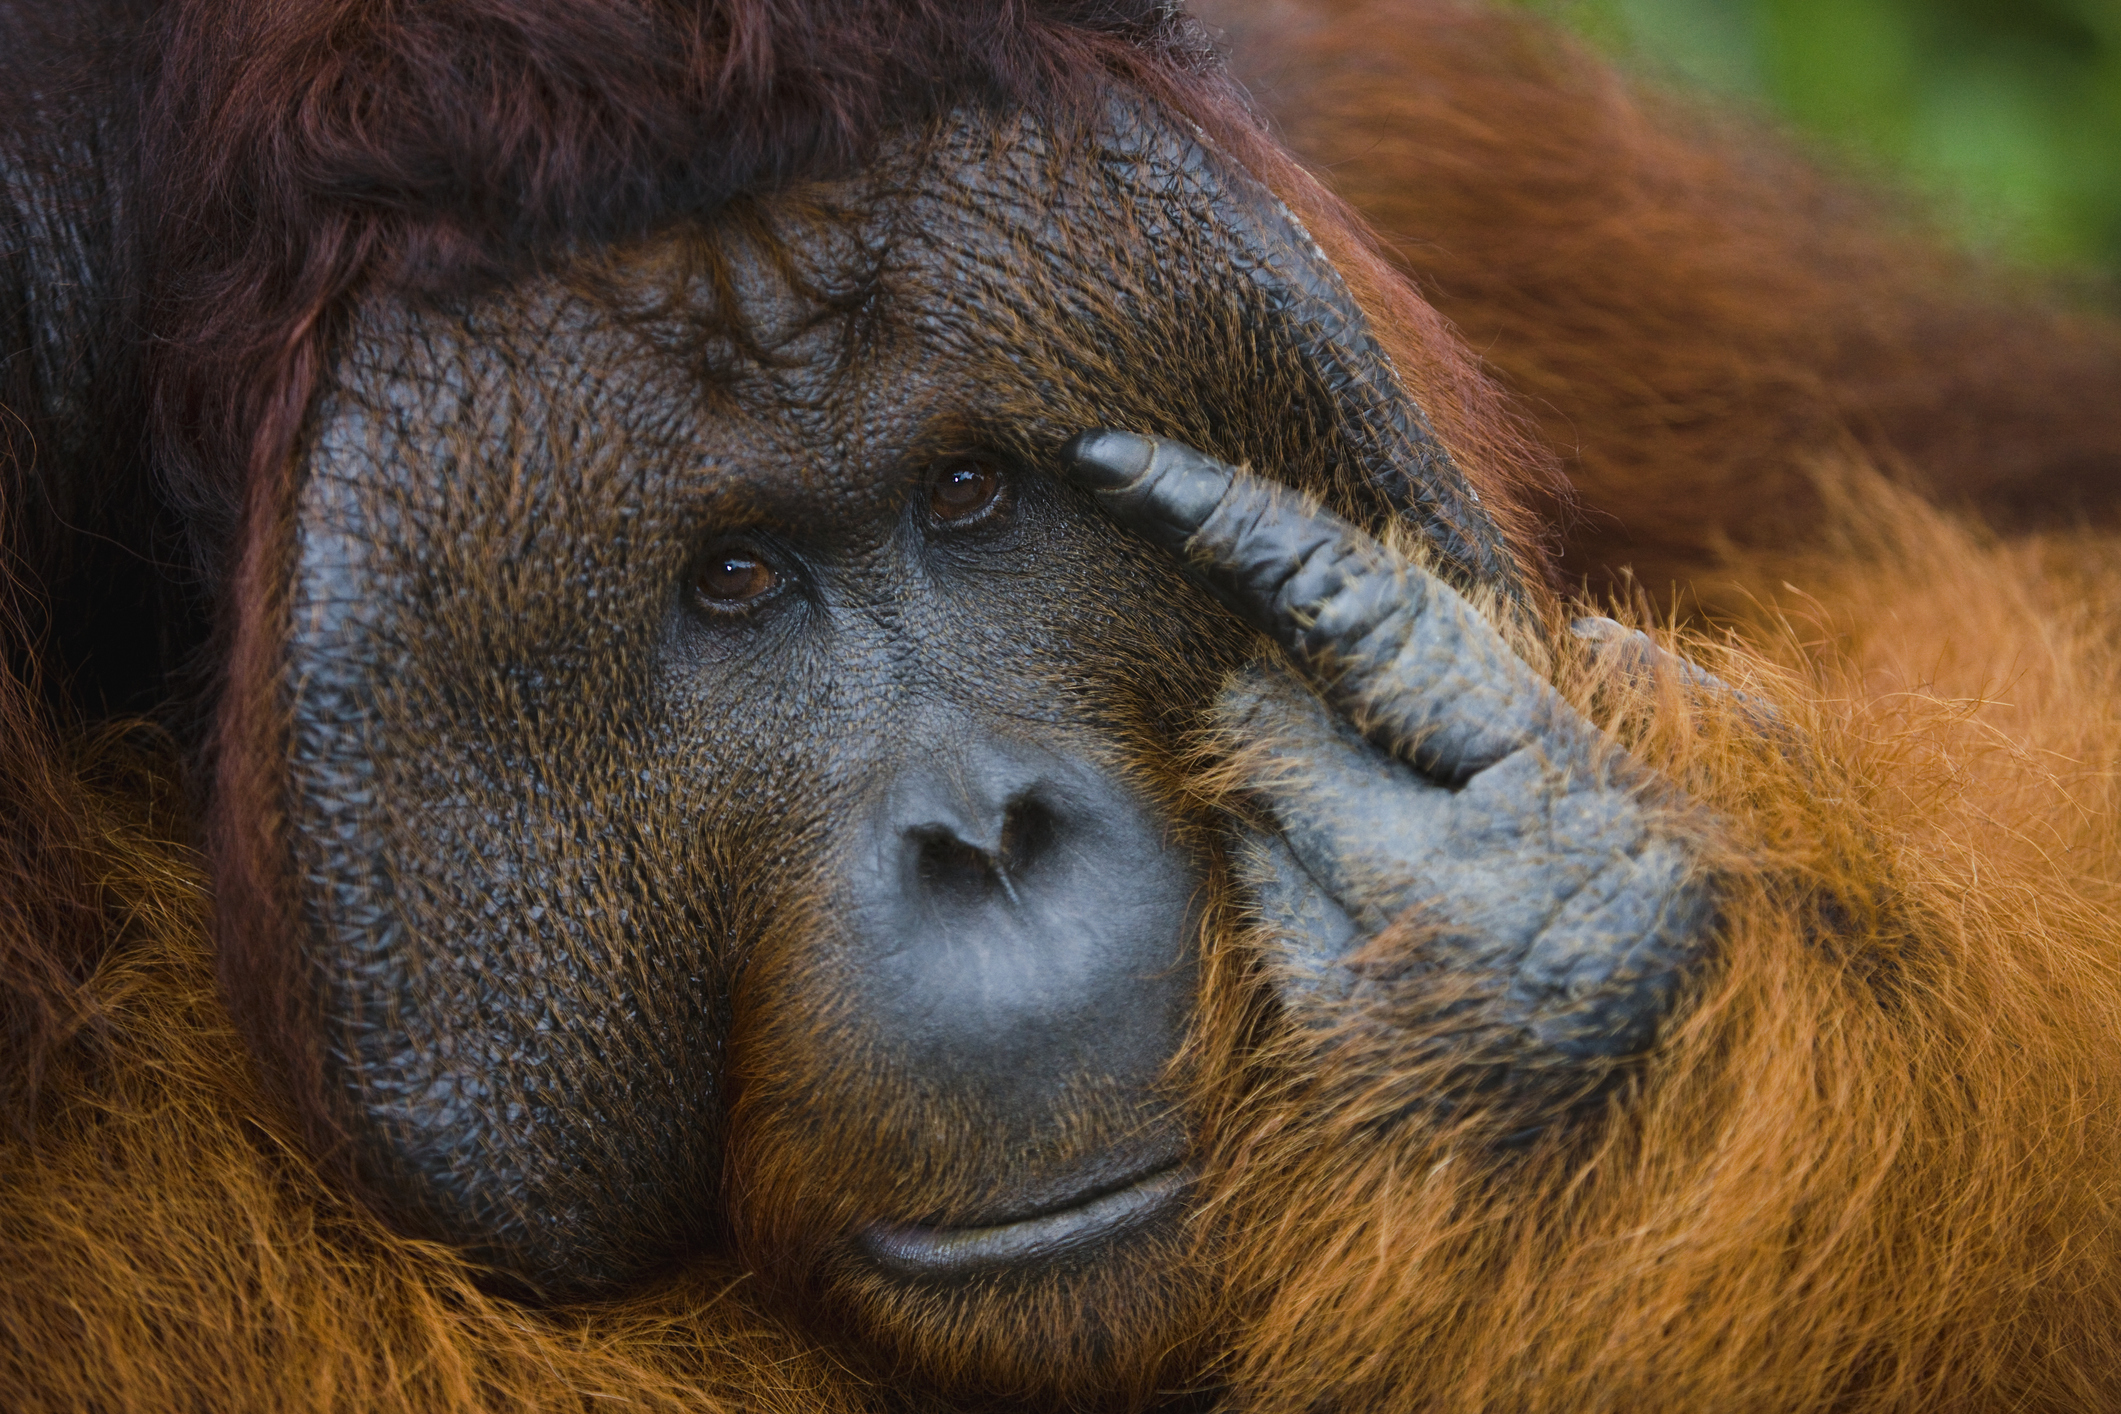 Puede que a los orangutanes no les guste el beatboxing, pero seguro que están haciendo algo